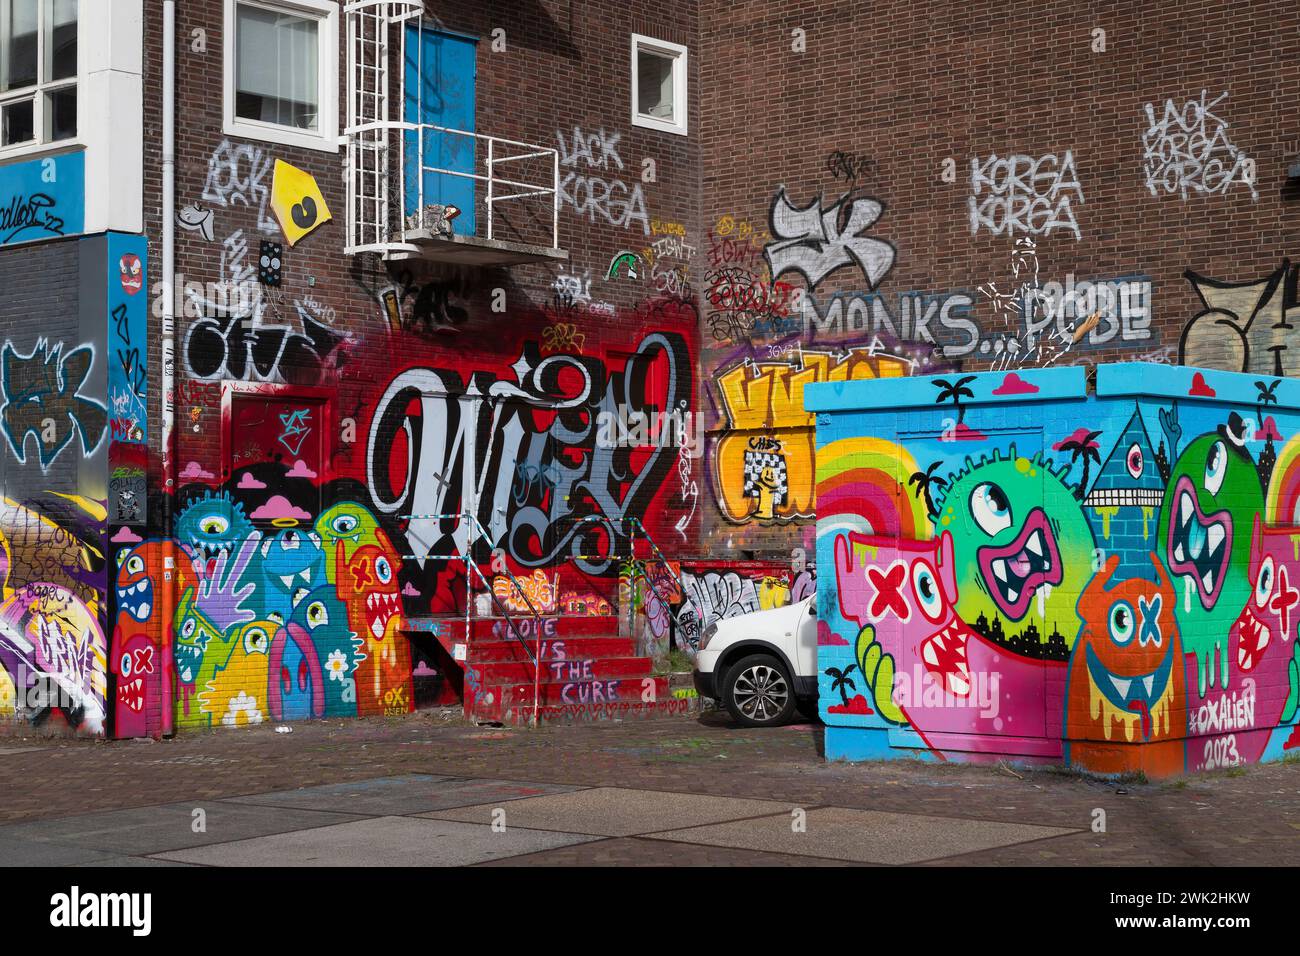 STRAAT - Museum für Graffiti und Straßenkunst auf dem ehemaligen NDSM-Kai in Amsterdam. Stockfoto